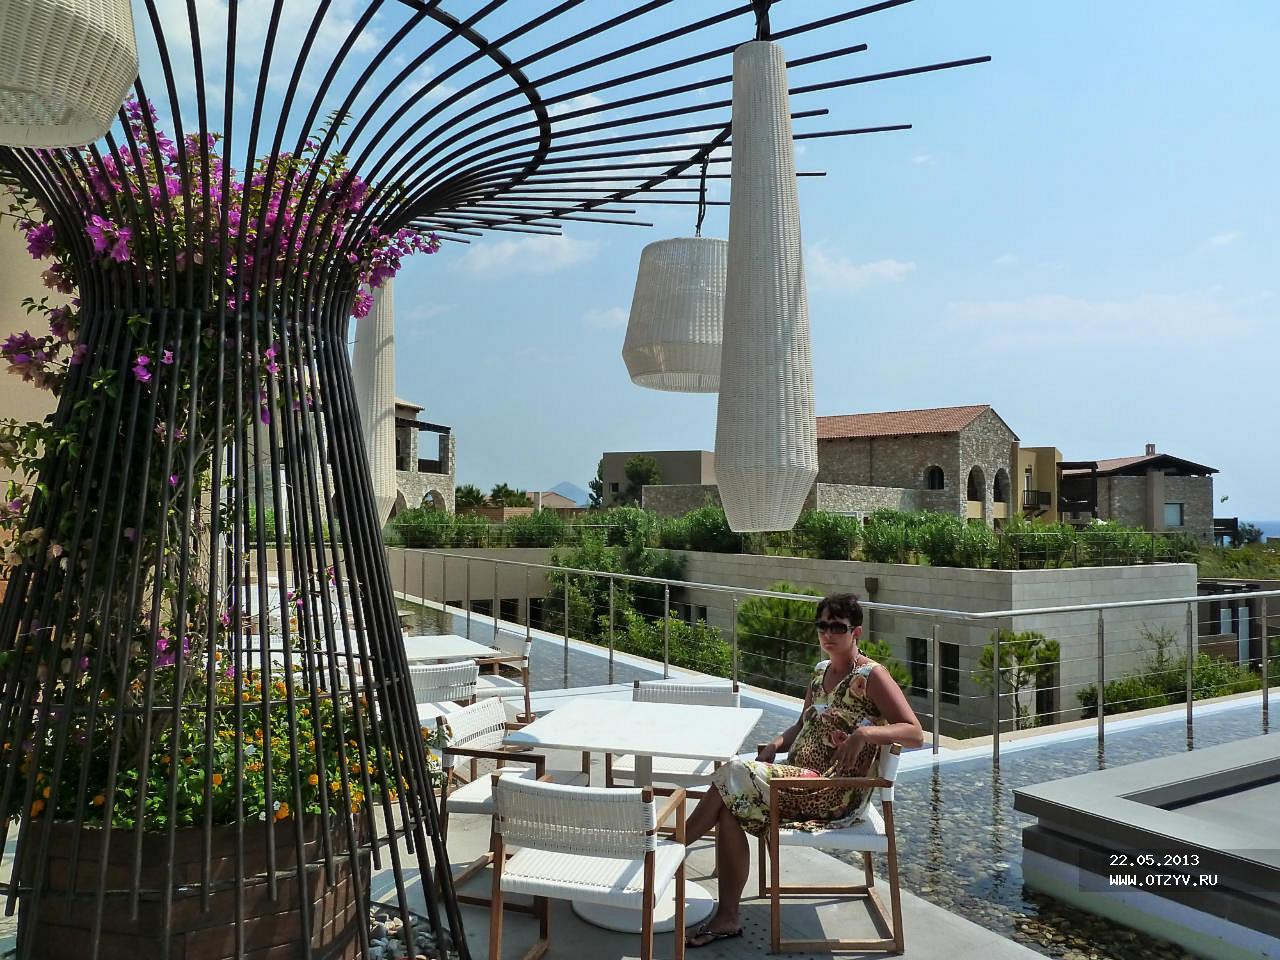 The Westin Resort Costa Navarino